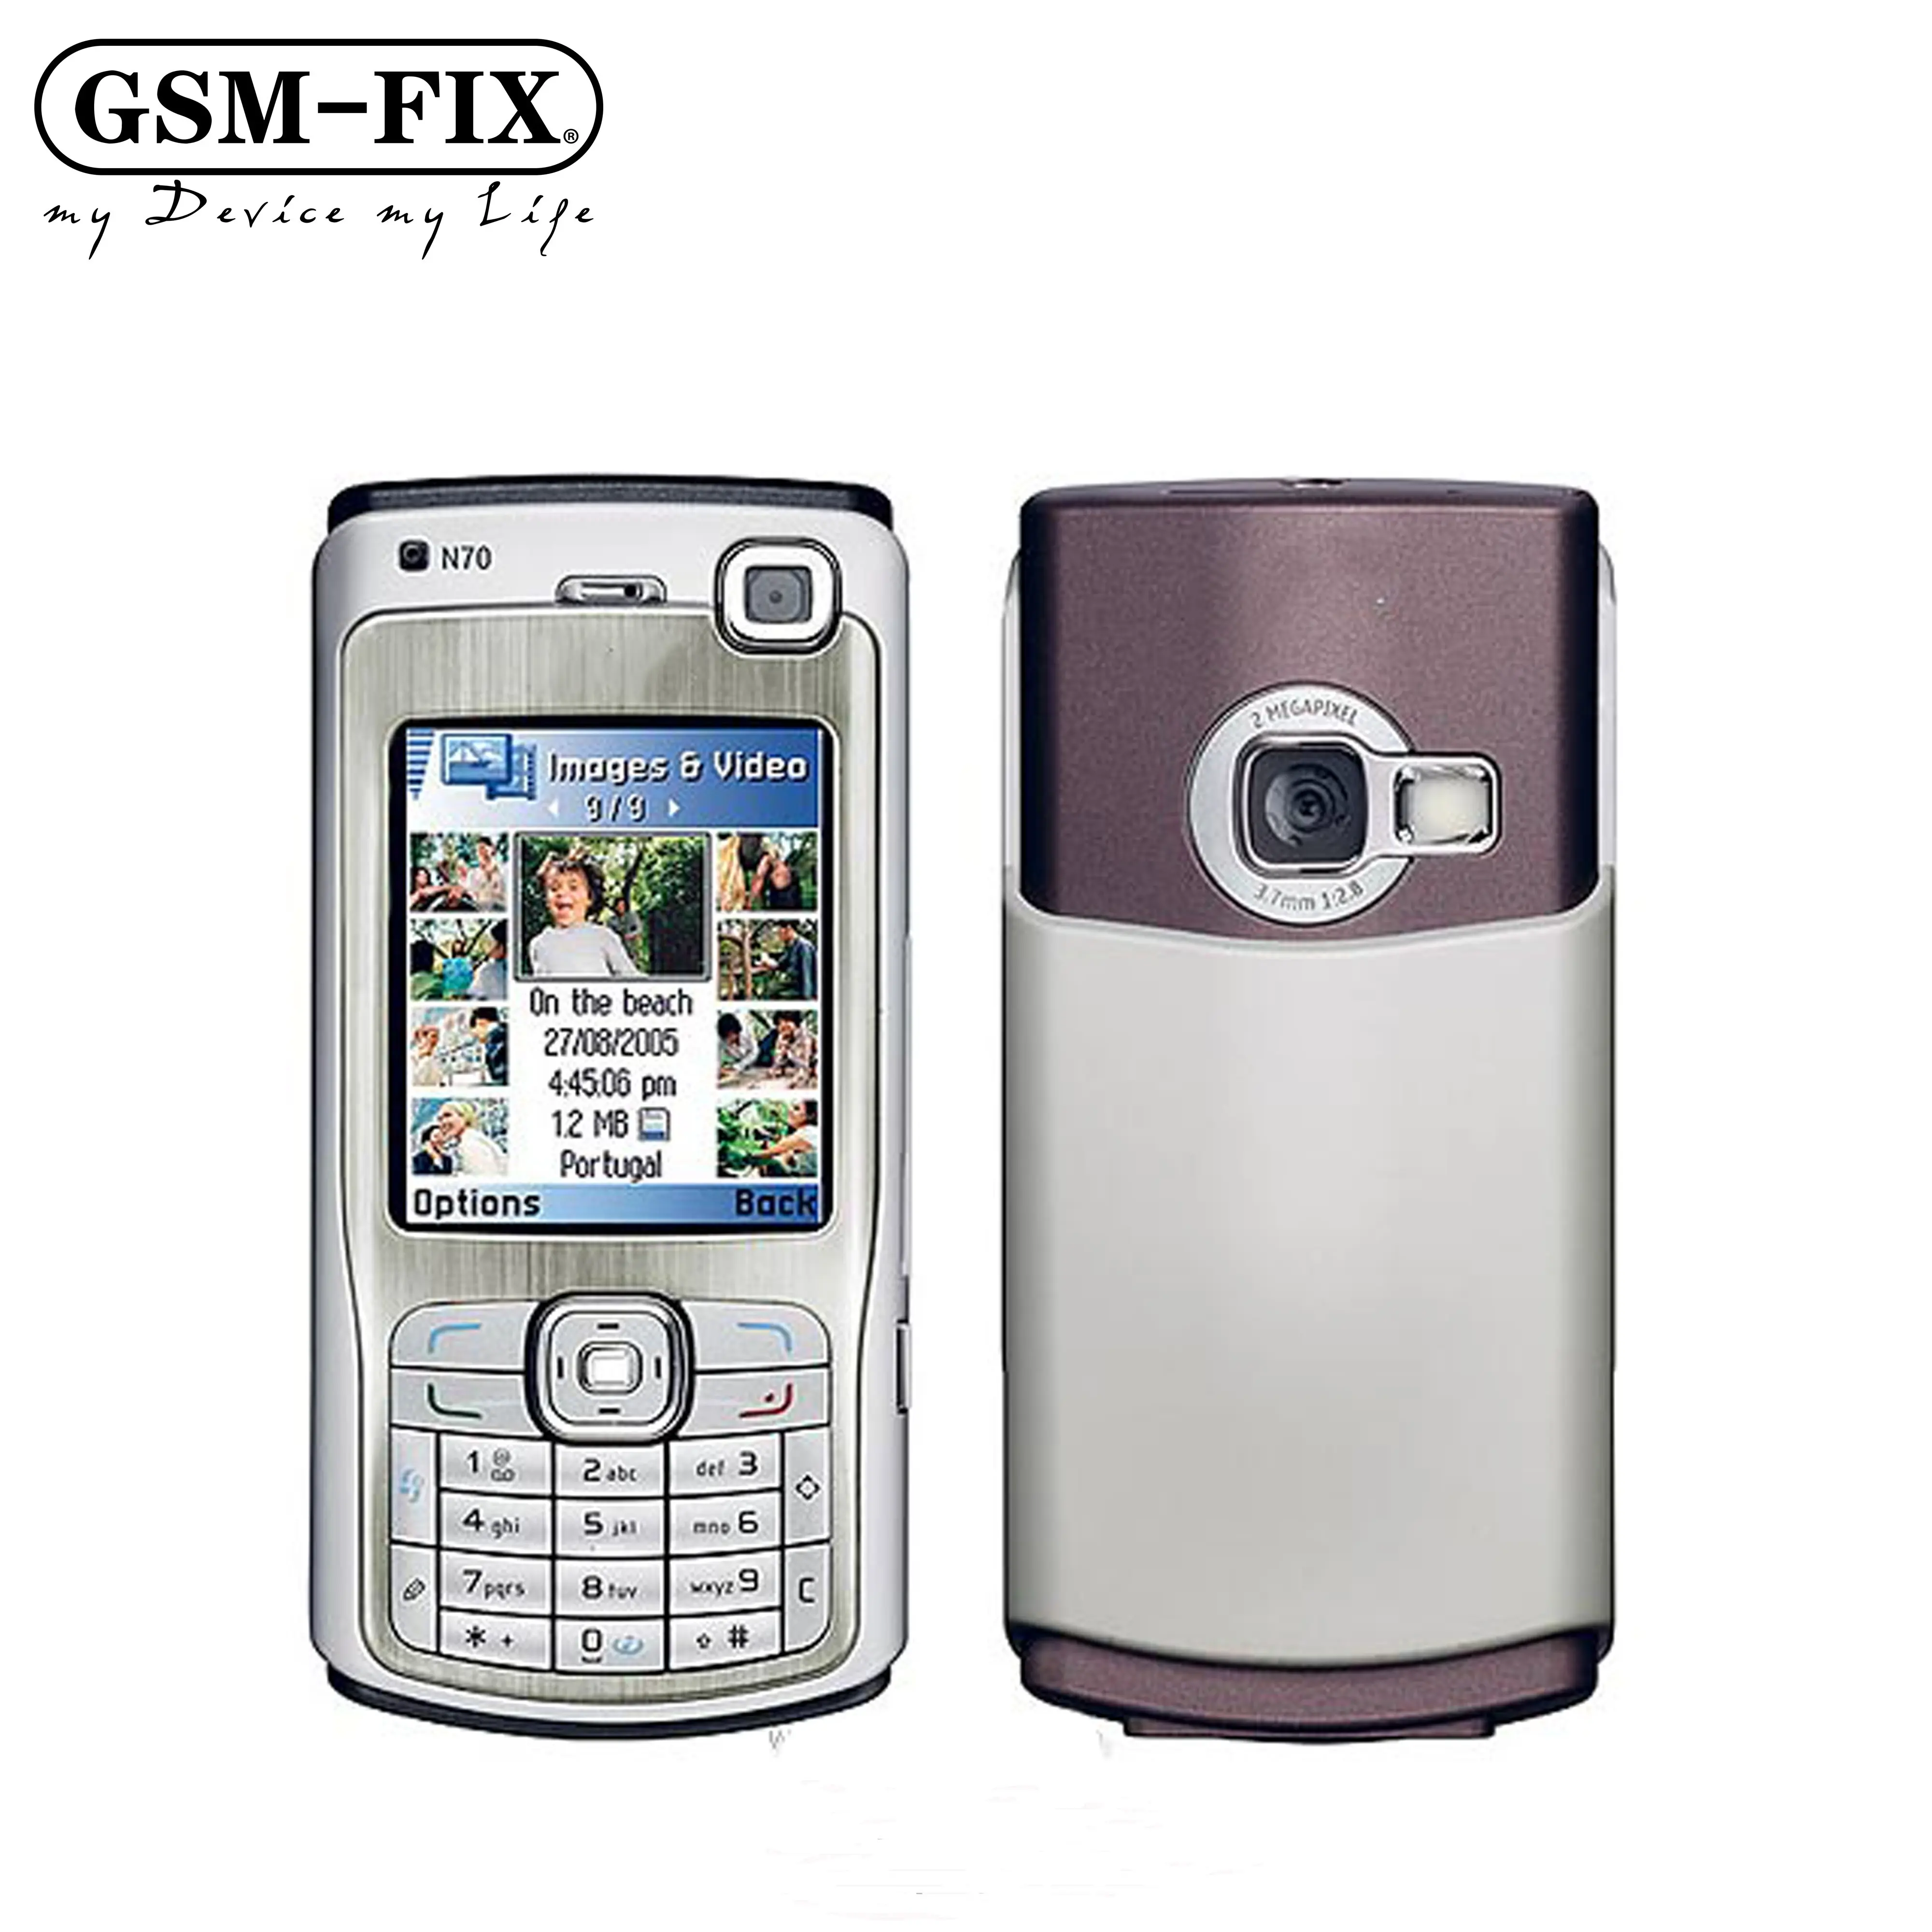 GSM-FIX sıcak satış ucuz orijinal basit klasik Bar GSM mobil cep telefonu satışa Nokia N70 için 2.1 inç ekran